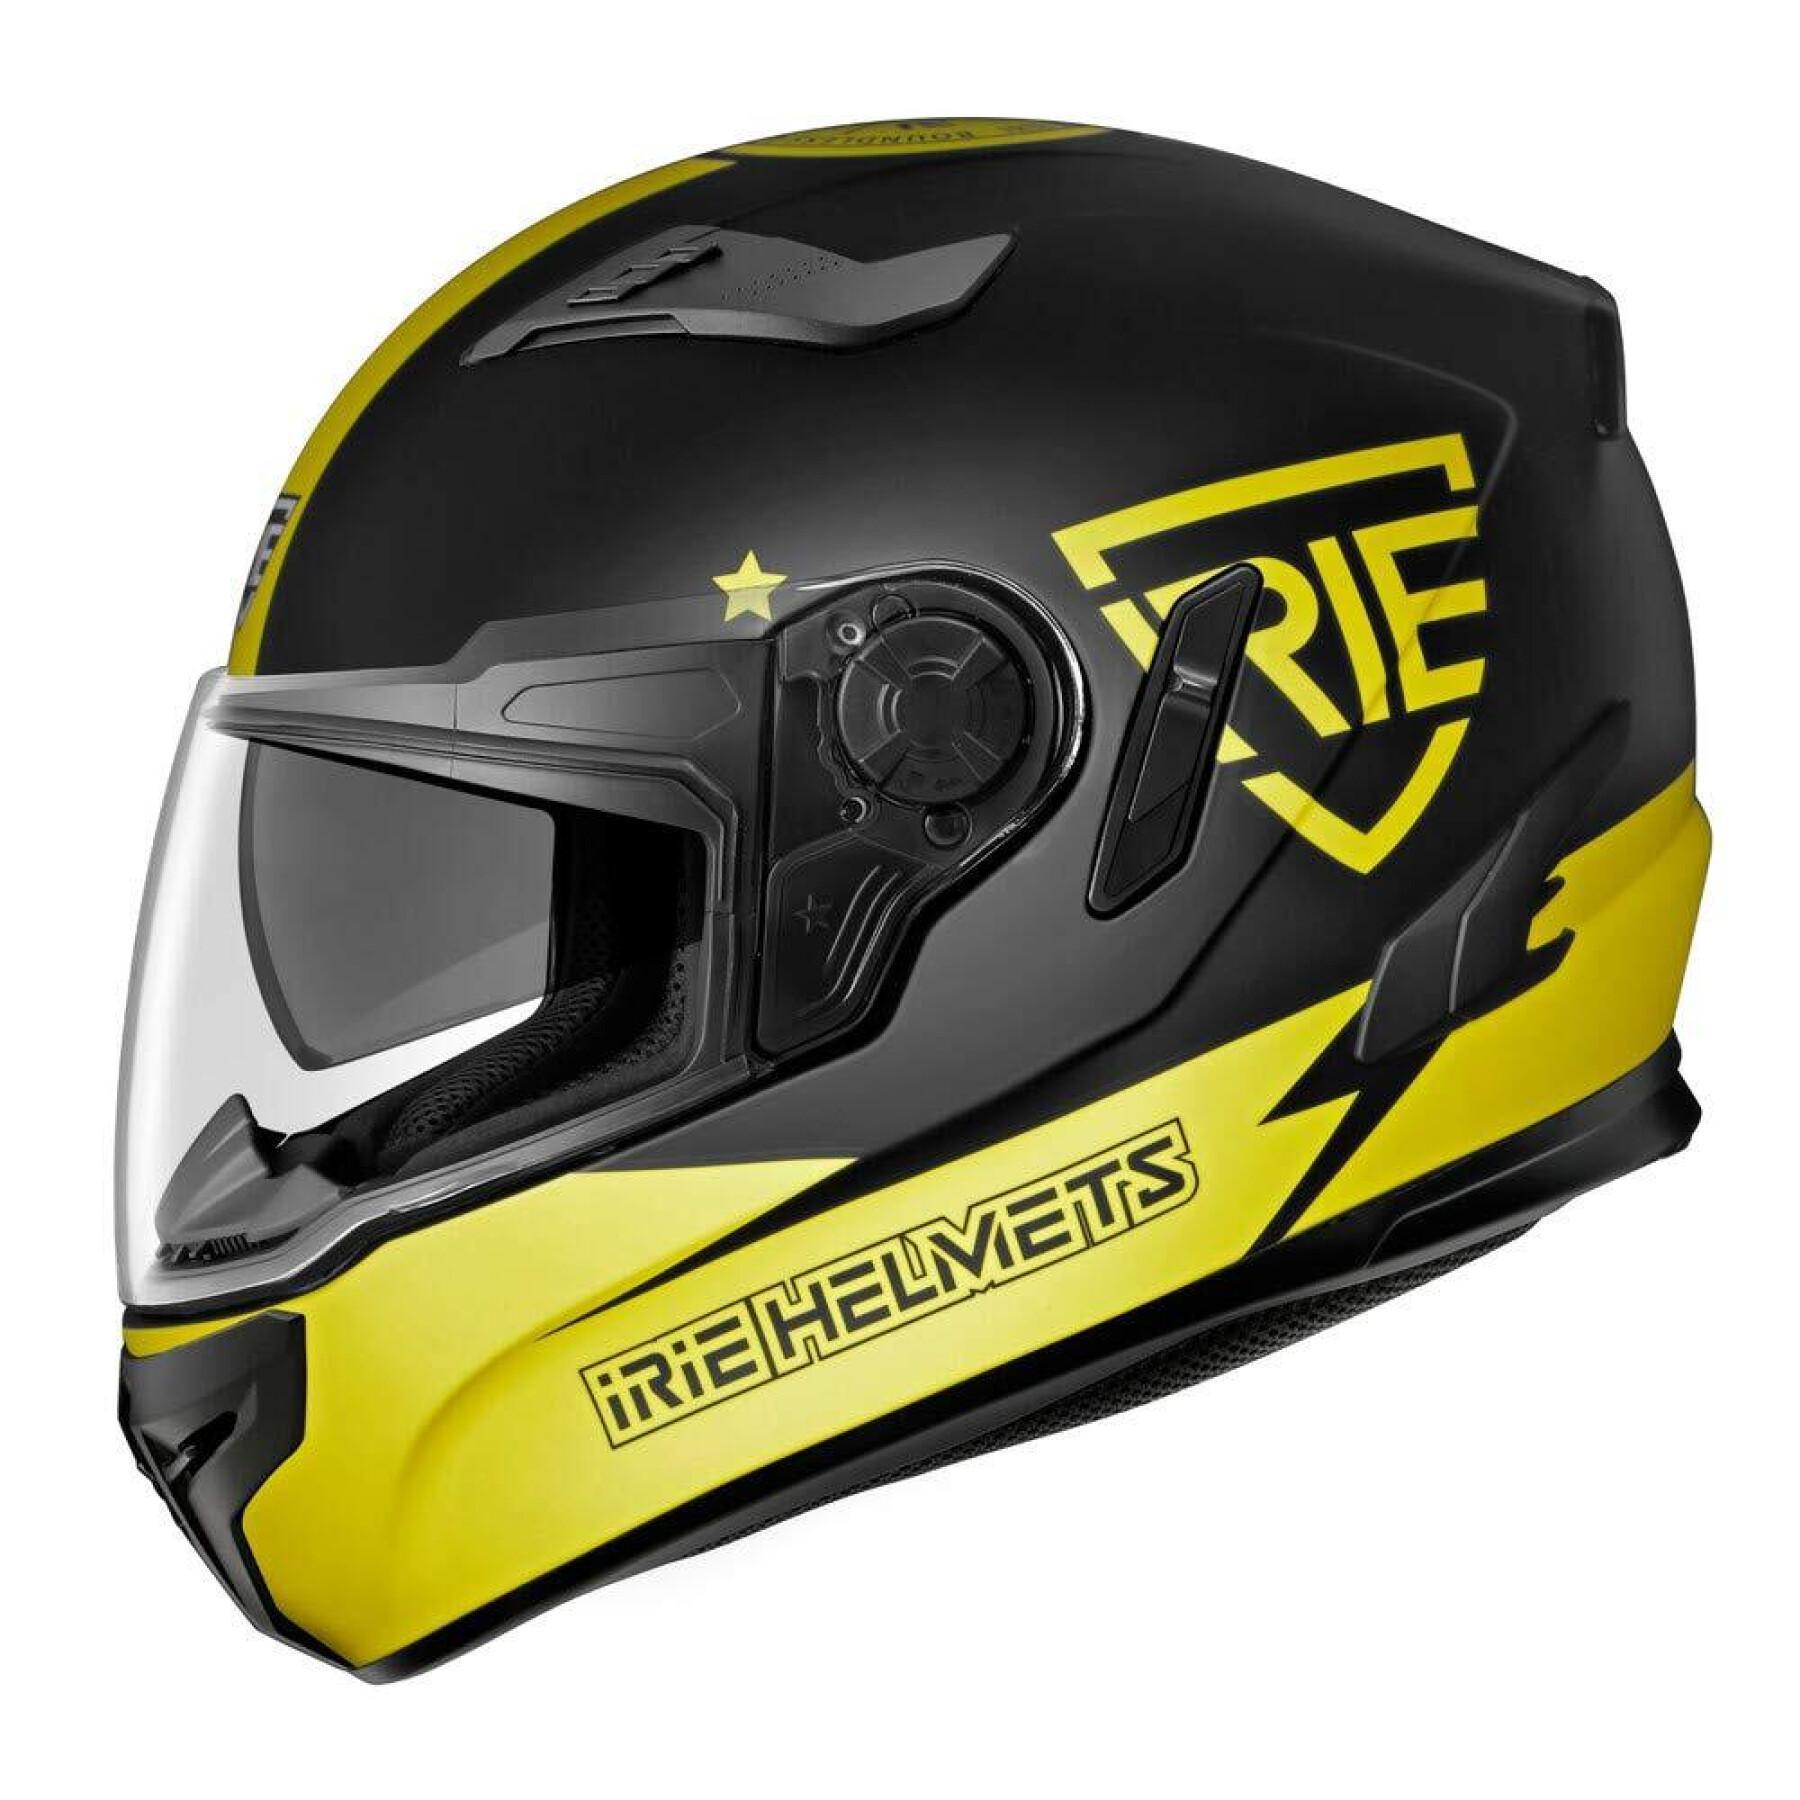 Casco integrale da moto IRIE Helmets Sfida